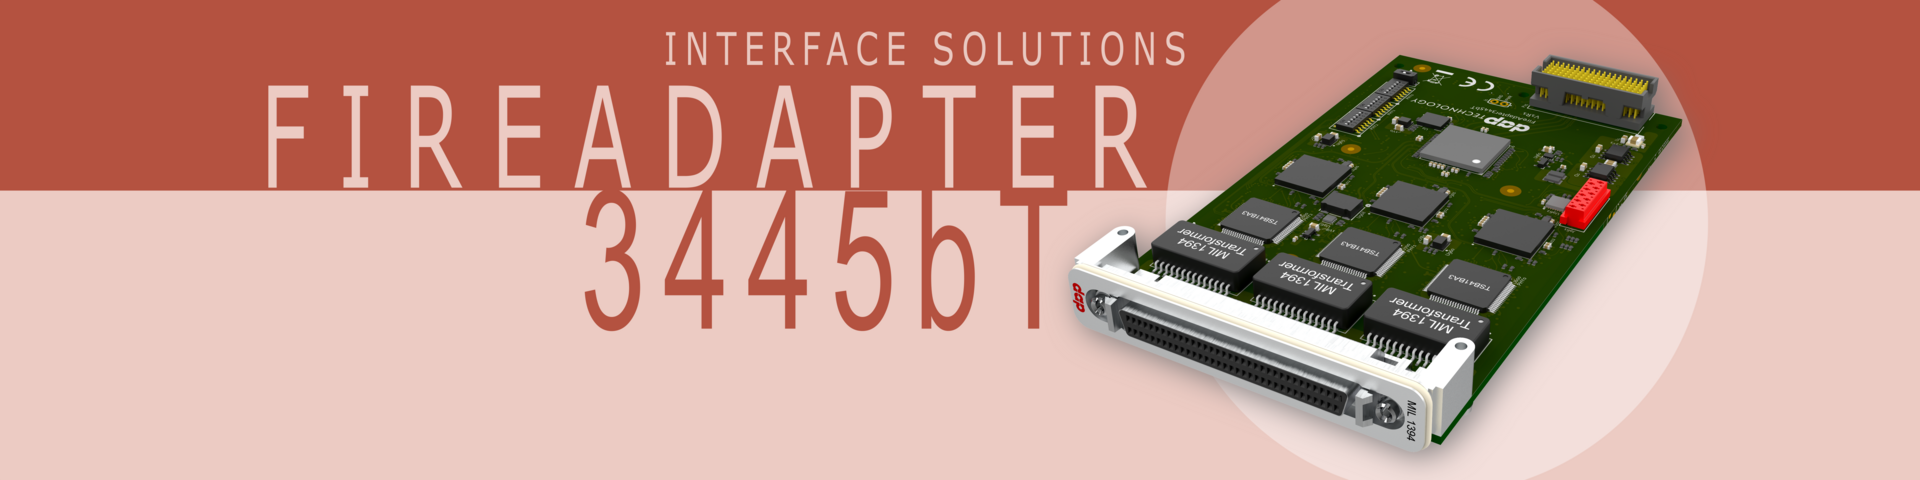 AS5643 Interface Card - FireAdapter3445bT